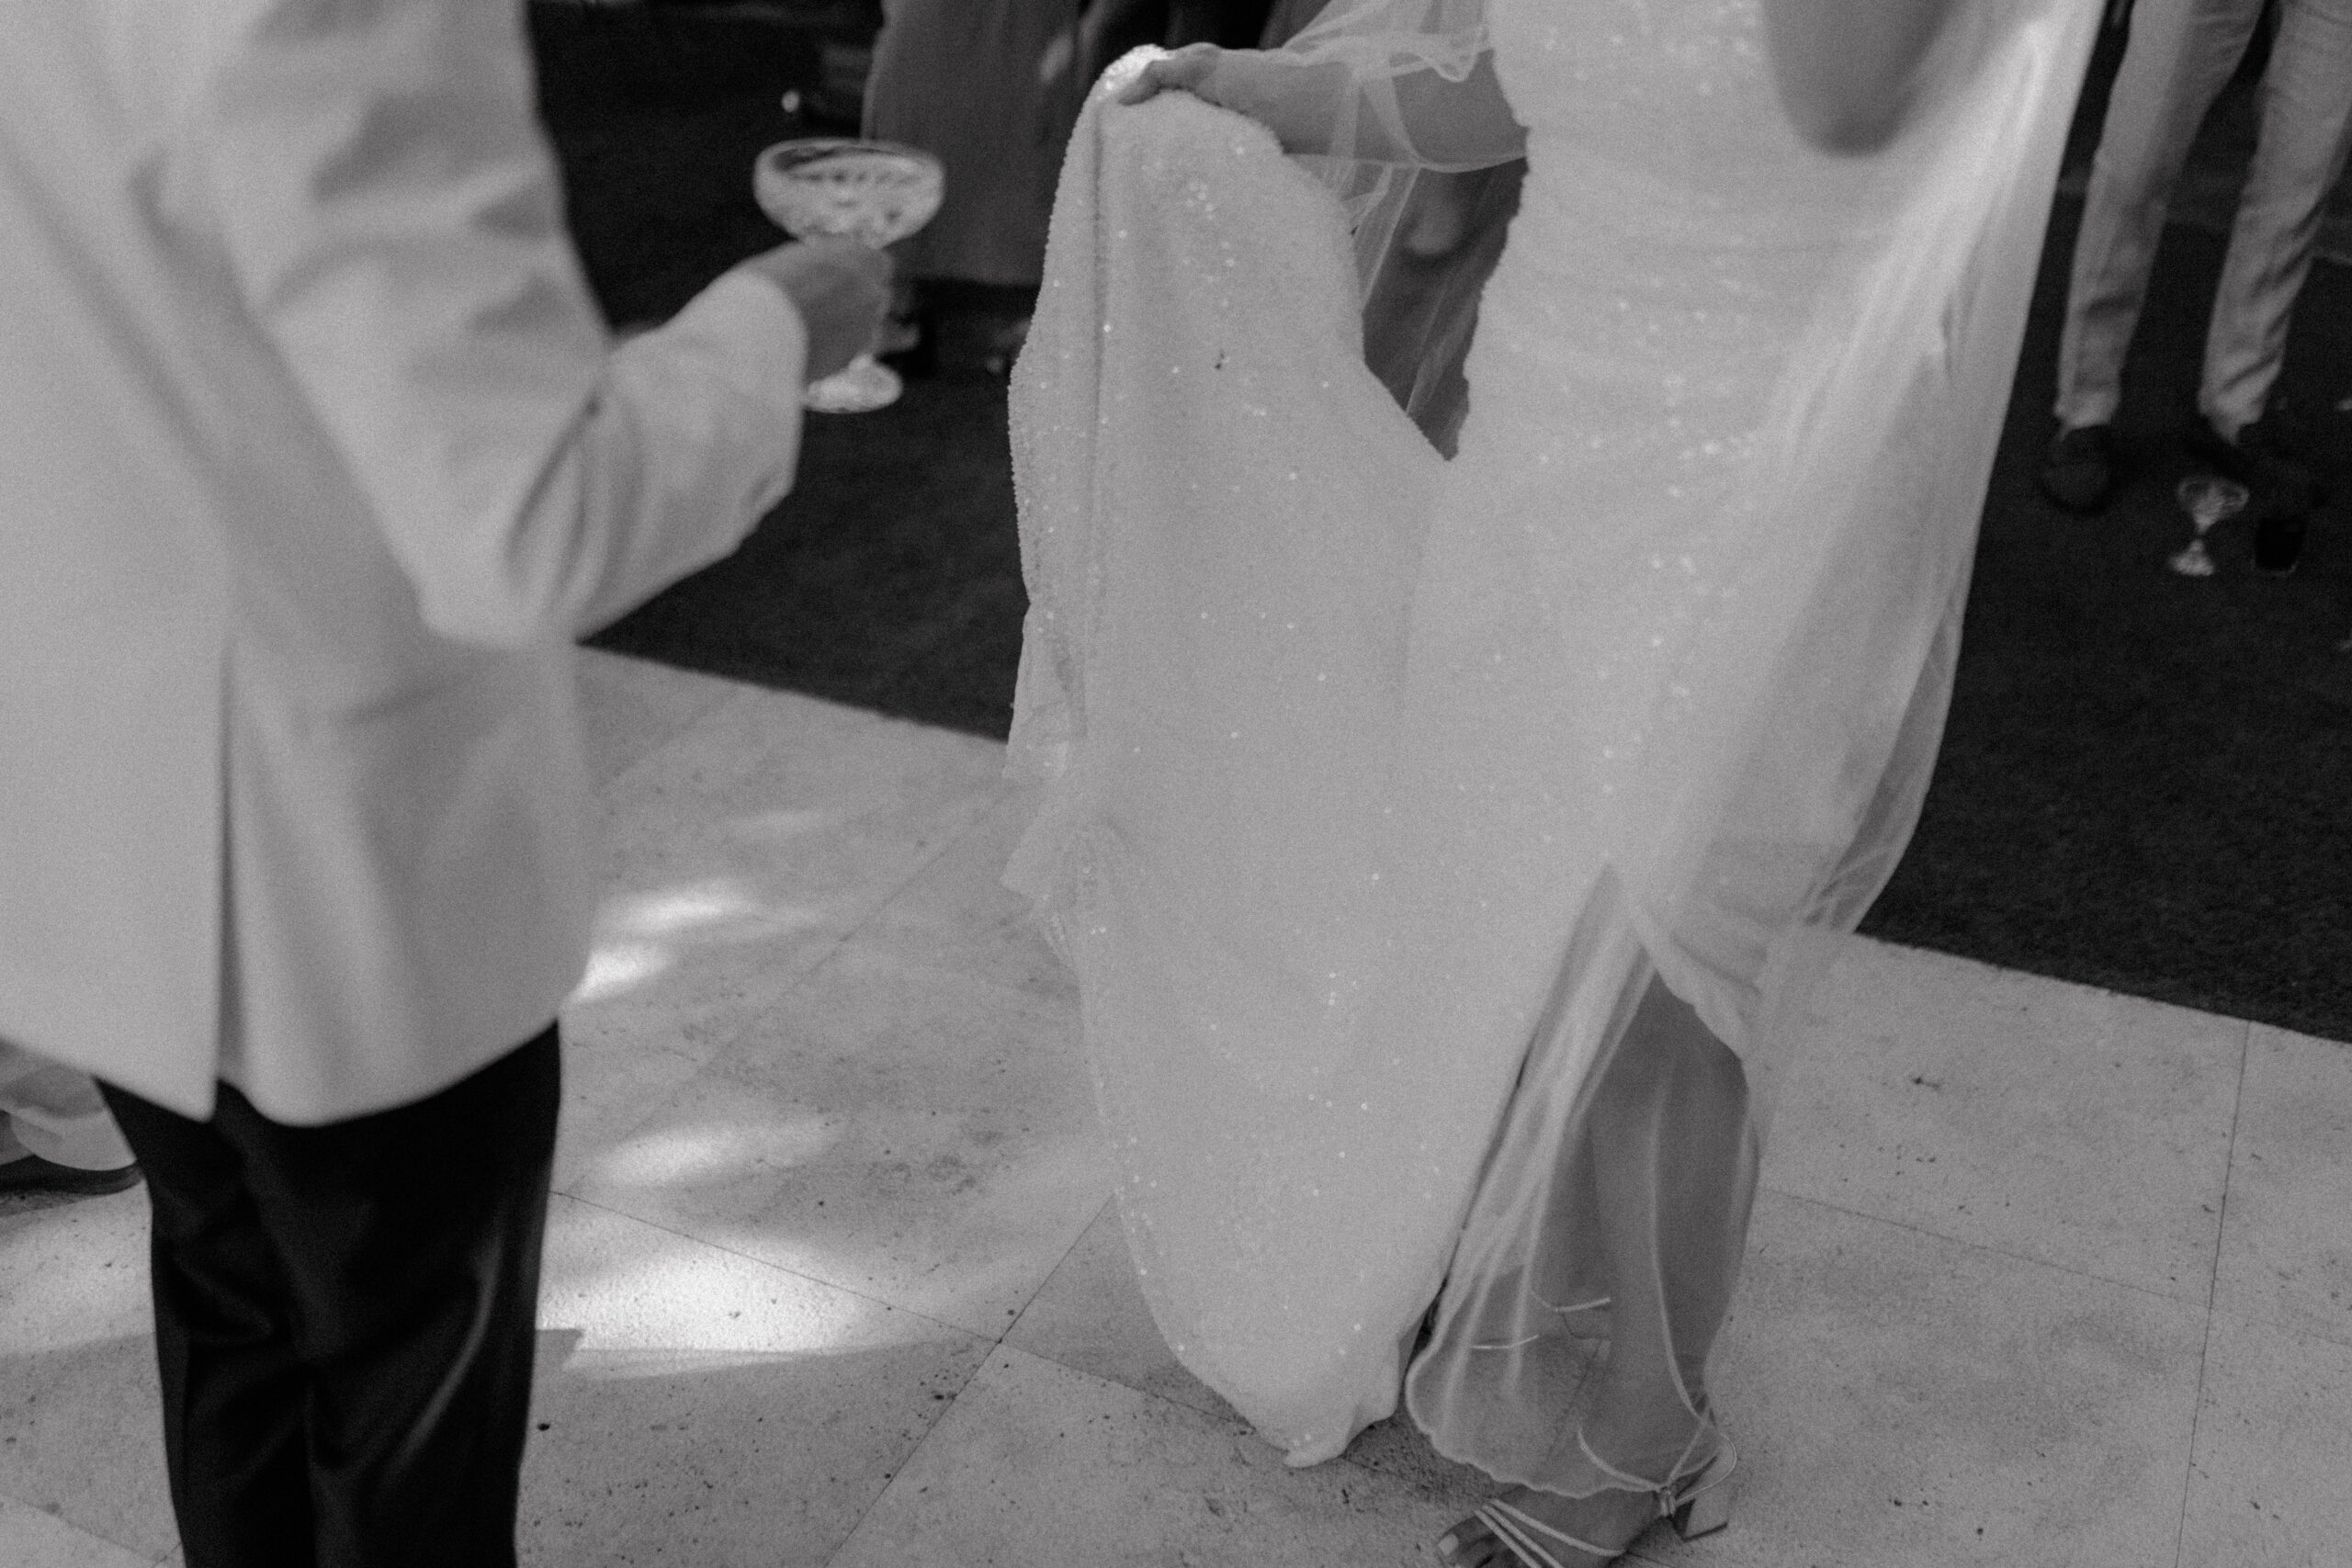 Detailaufnahme der Umarmung eines Brautpaares auf ihrer Hochzeitsfeier in Köln, fokussiert auf die glitzernde Brautkleid-Schleppe und die elegante Handhaltung, in Schwarz-Weiß für eine zeitlose Ästhetik.